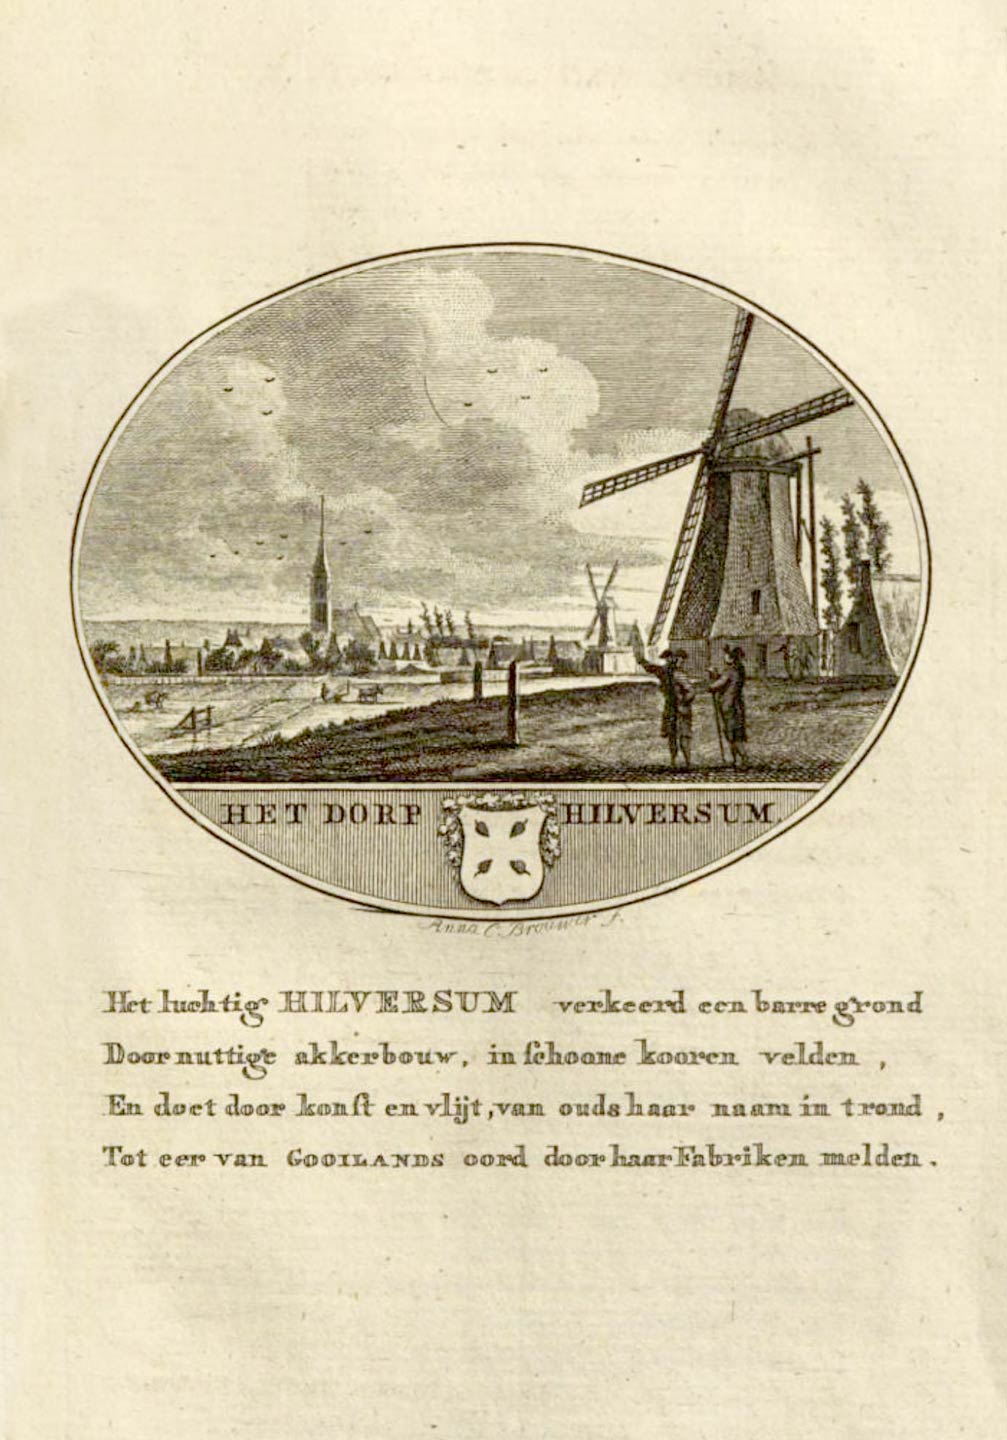 Het dorp Hilversum